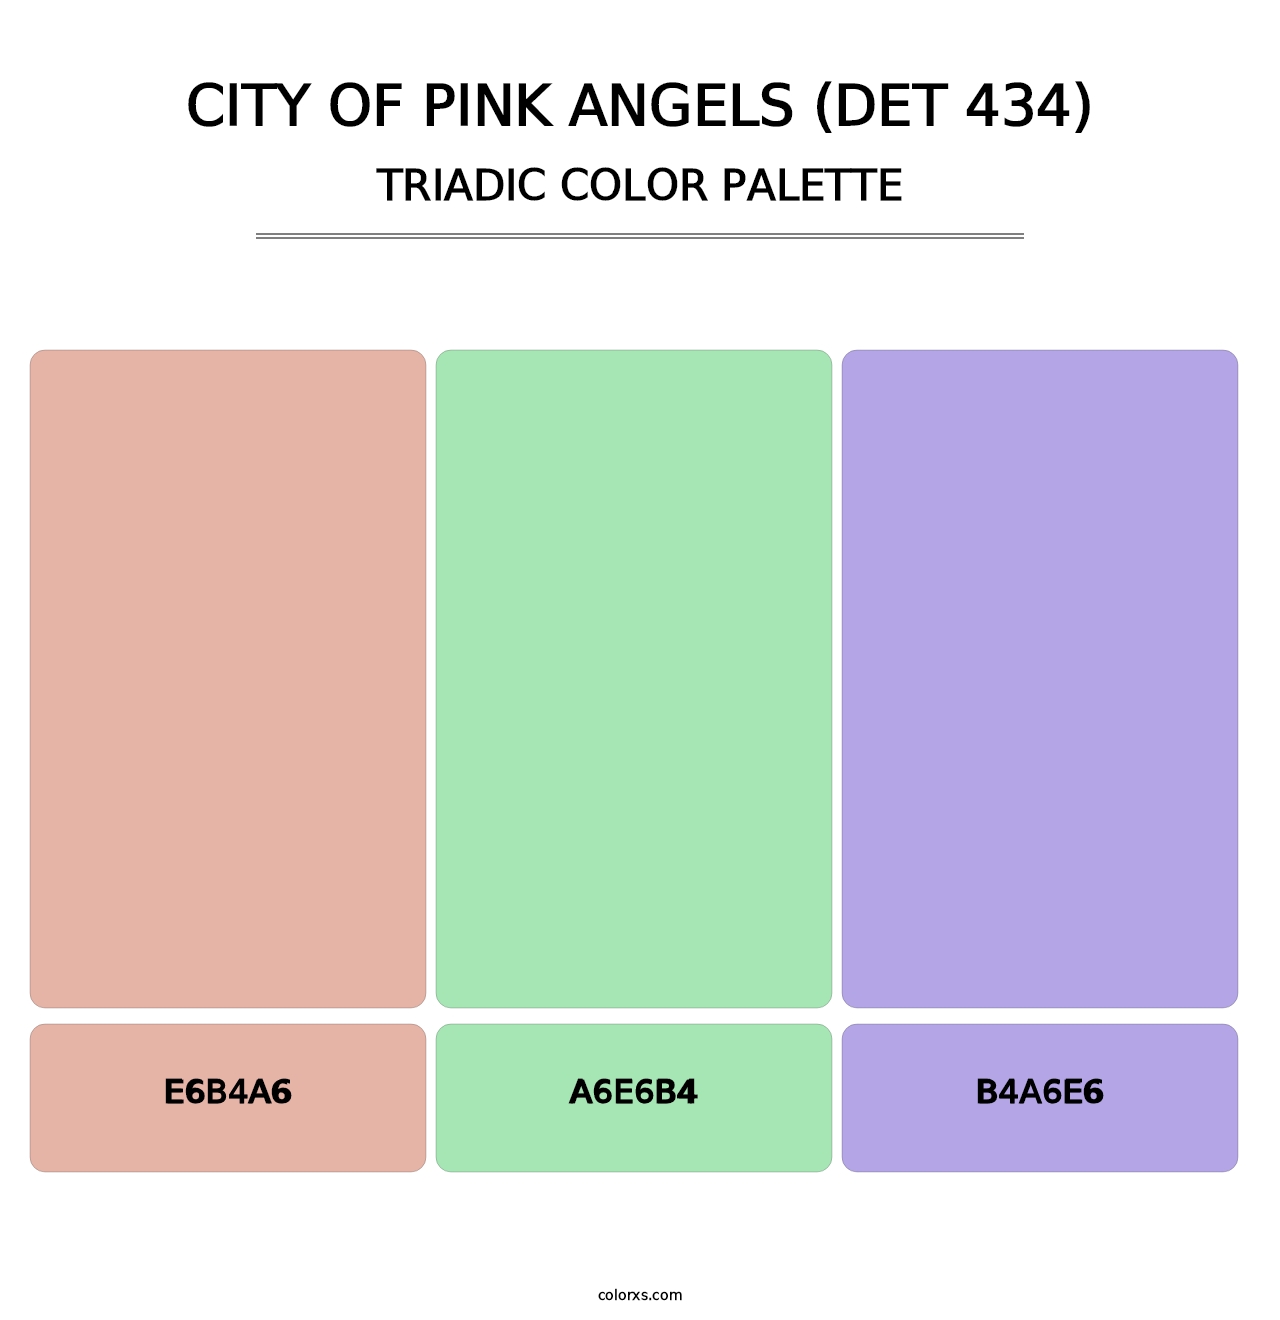 City of Pink Angels (DET 434) - Triadic Color Palette